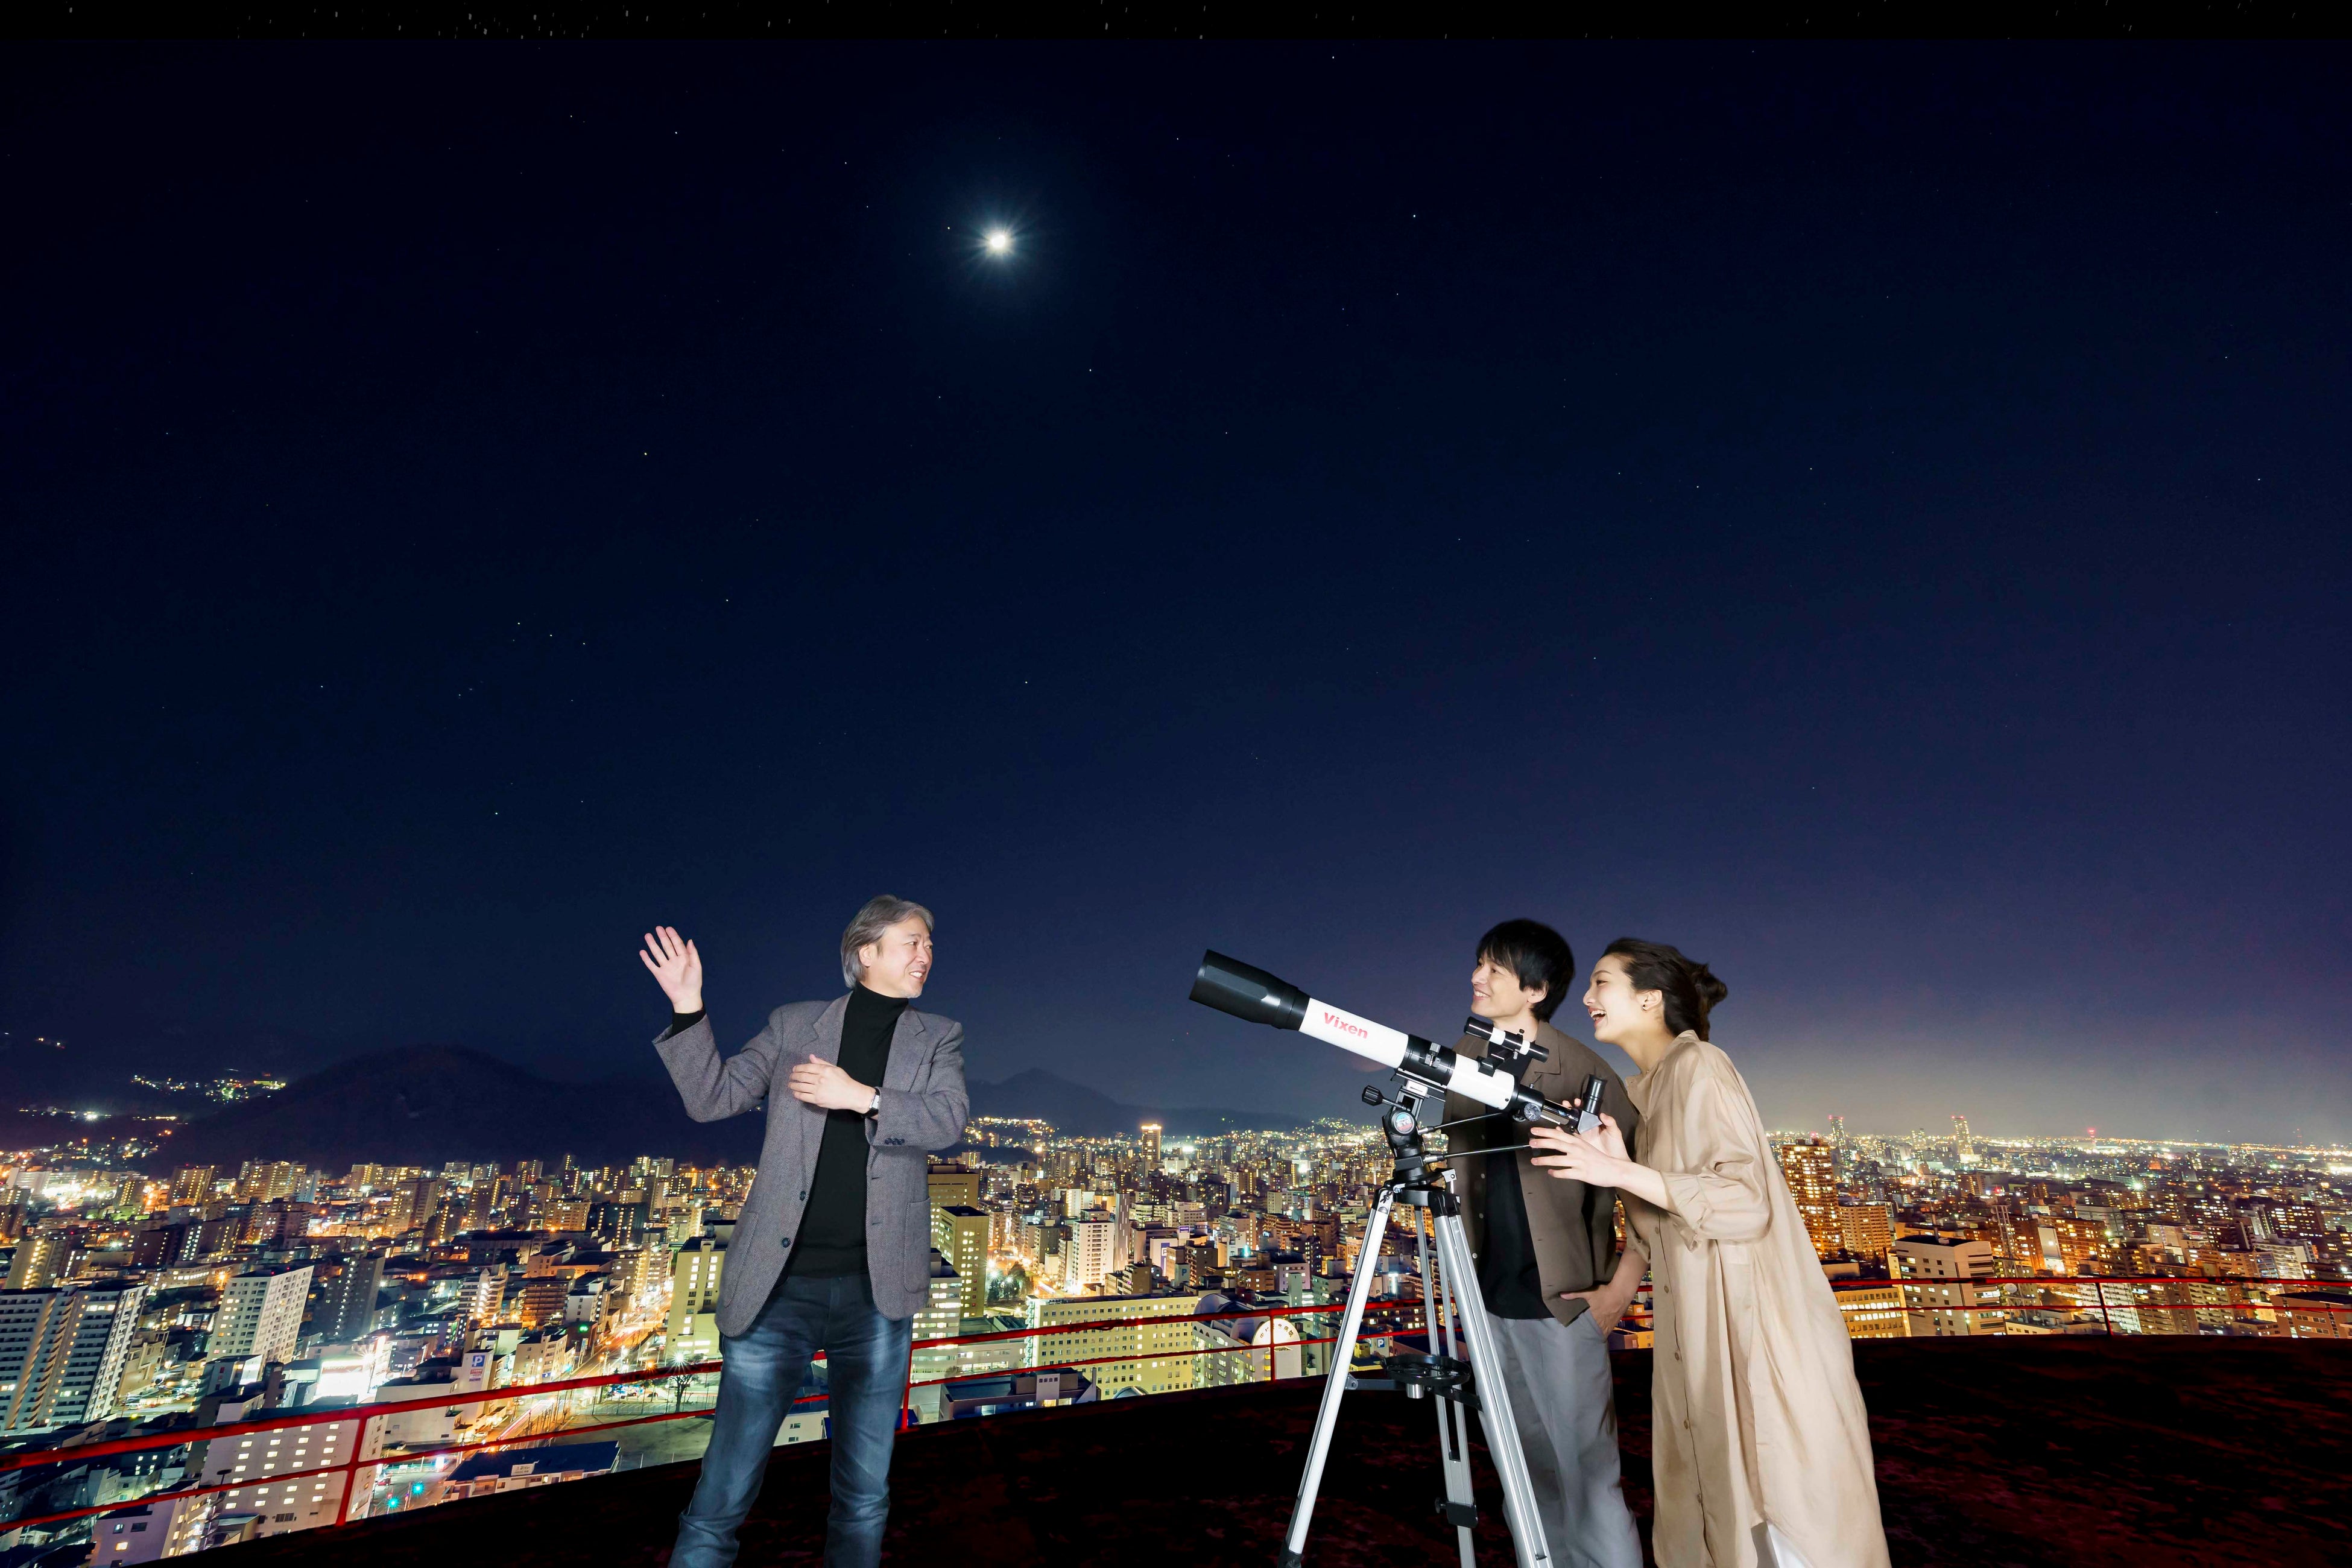 【札幌プリンスホテル】「ペルセウス座流星群」のピークに合わせて地上107mの屋上ヘリポートで天体観測イベントを開催。